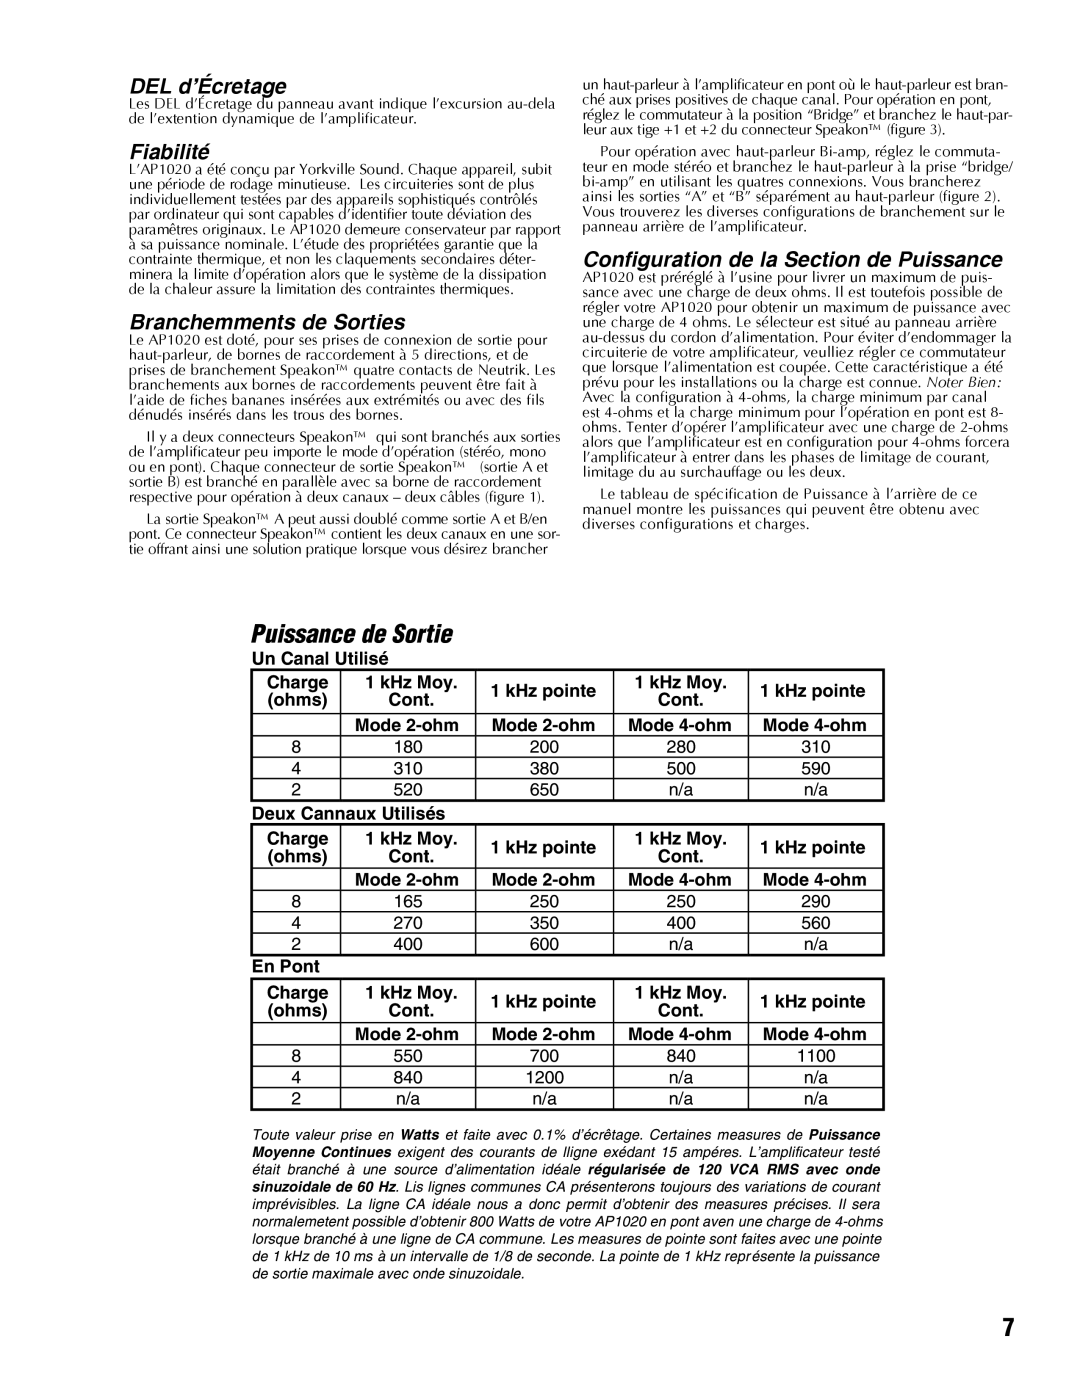 Yorkville Sound AP1020 manual Puissance de Sortie, DEL d’Écretage, Fiabilité, Branchemments de Sorties 